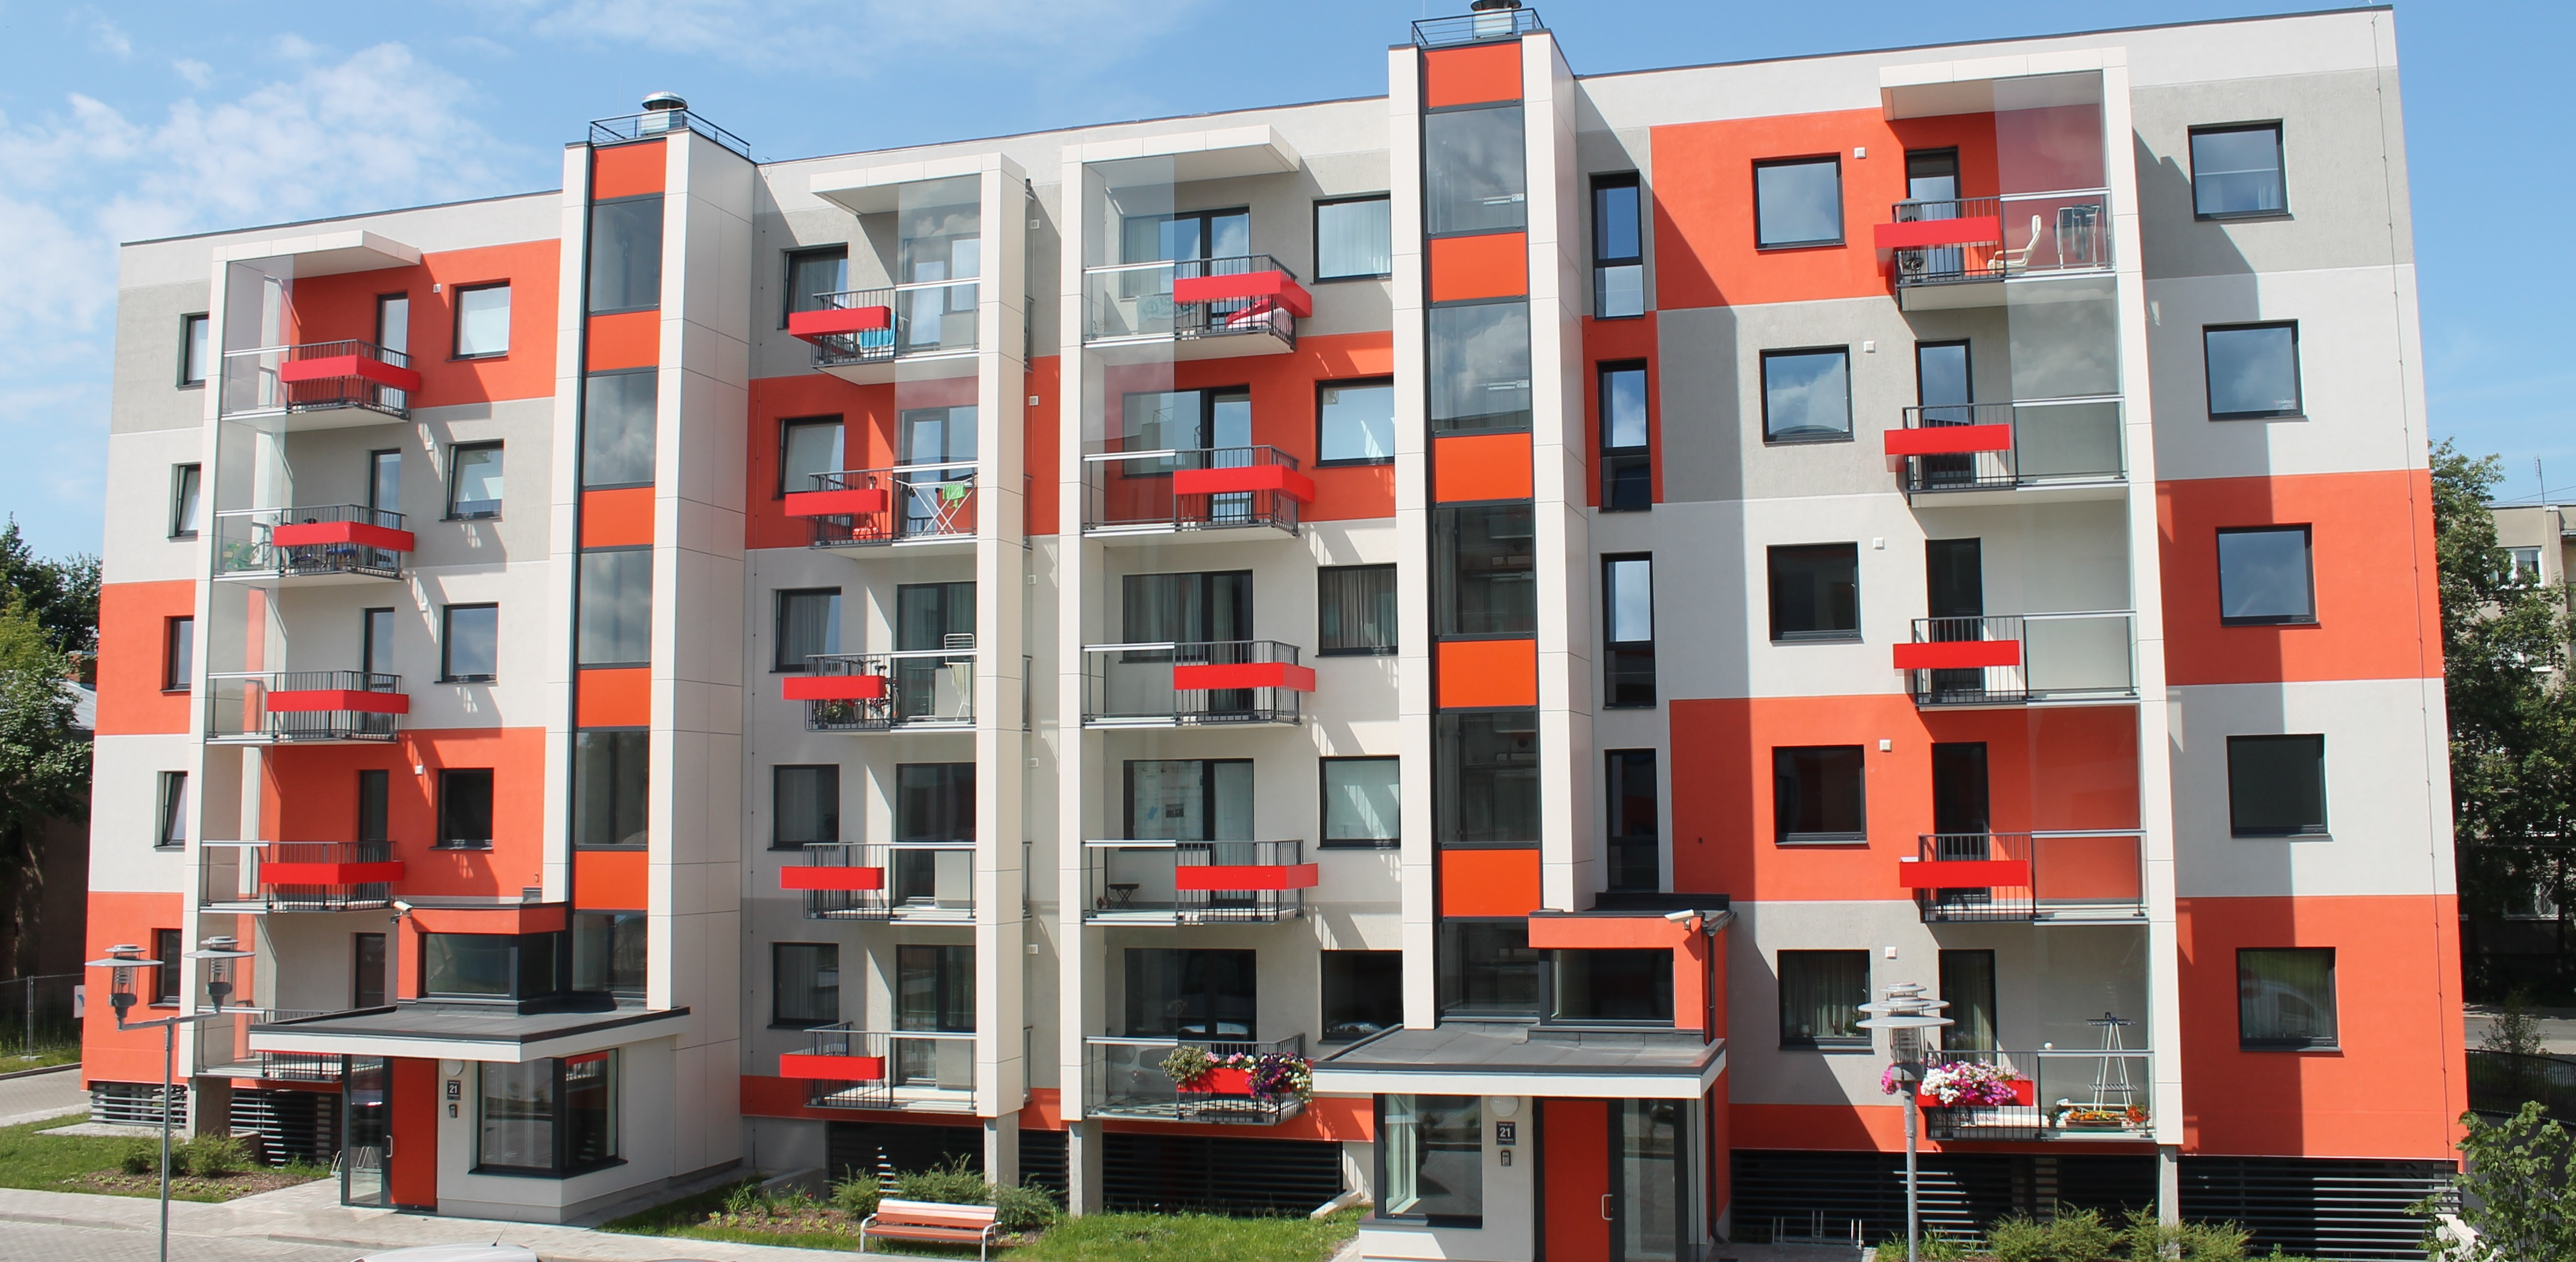 Українці масово купують та орендують квартири у Польщі - ціни зростають